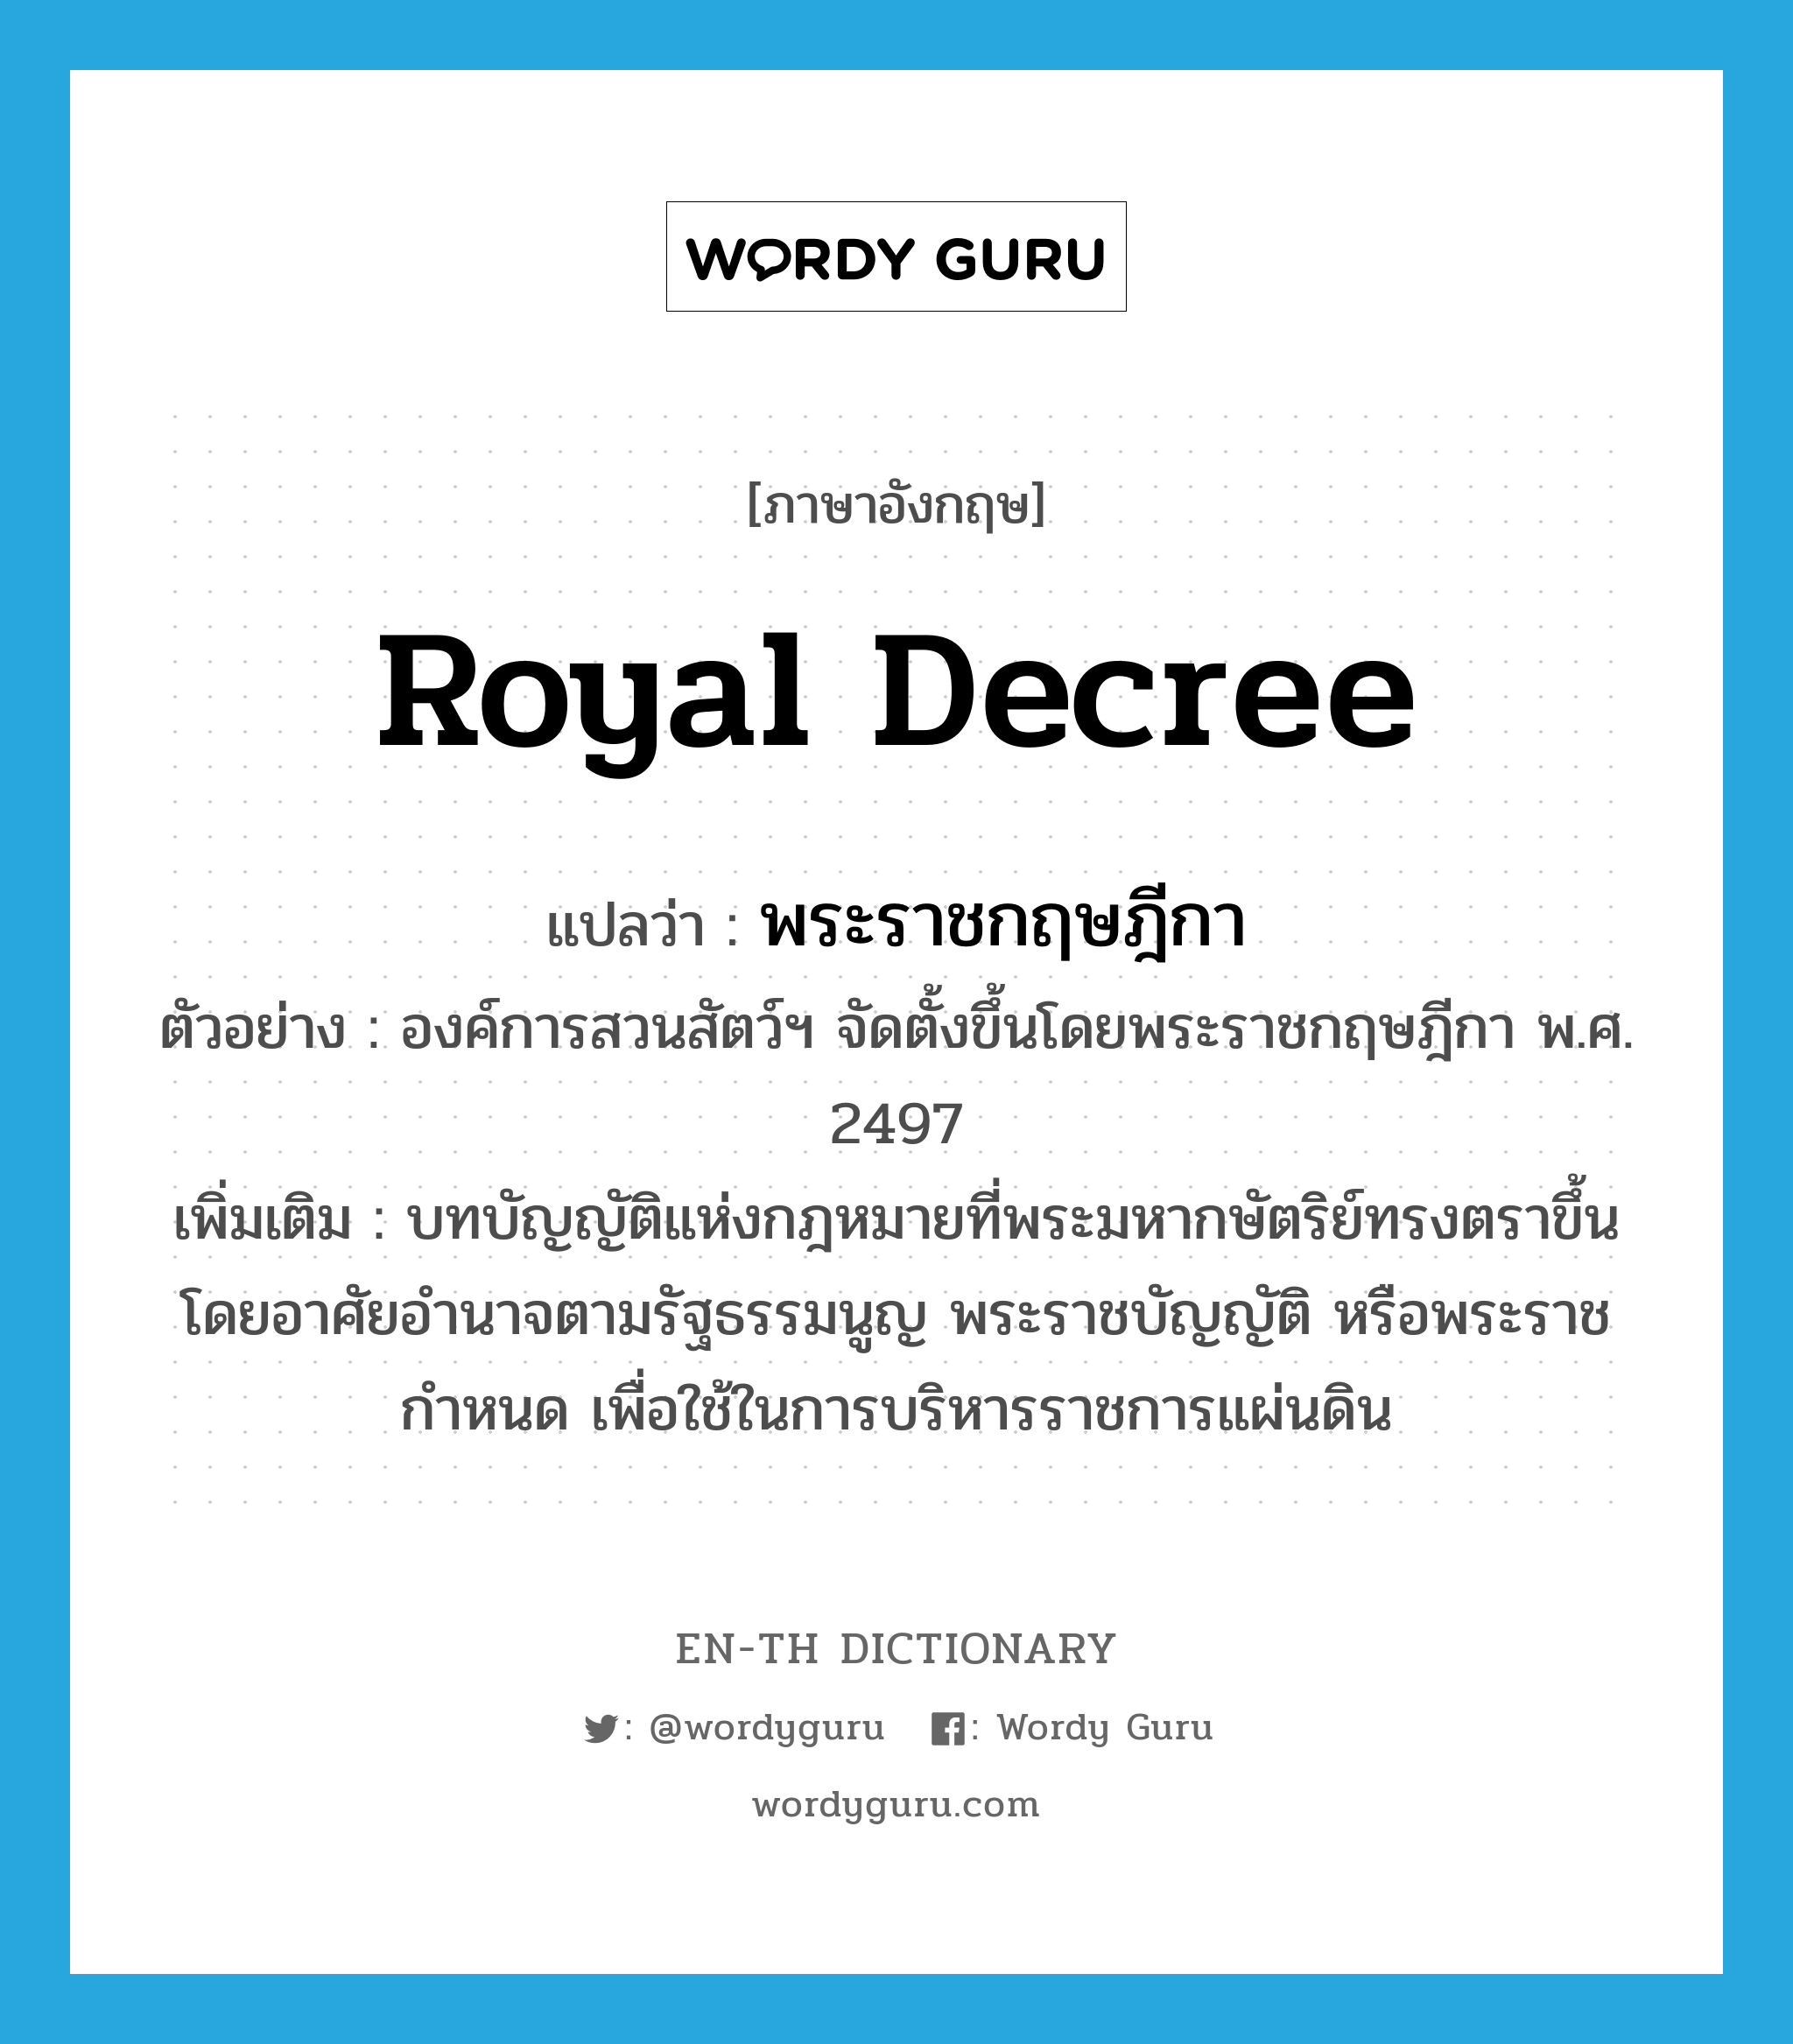 royal decree แปลว่า?, คำศัพท์ภาษาอังกฤษ royal decree แปลว่า พระราชกฤษฎีกา ประเภท N ตัวอย่าง องค์การสวนสัตว์ฯ จัดตั้งขึ้นโดยพระราชกฤษฎีกา พ.ศ. 2497 เพิ่มเติม บทบัญญัติแห่งกฎหมายที่พระมหากษัตริย์ทรงตราขึ้นโดยอาศัยอำนาจตามรัฐธรรมนูญ พระราชบัญญัติ หรือพระราชกำหนด เพื่อใช้ในการบริหารราชการแผ่นดิน หมวด N